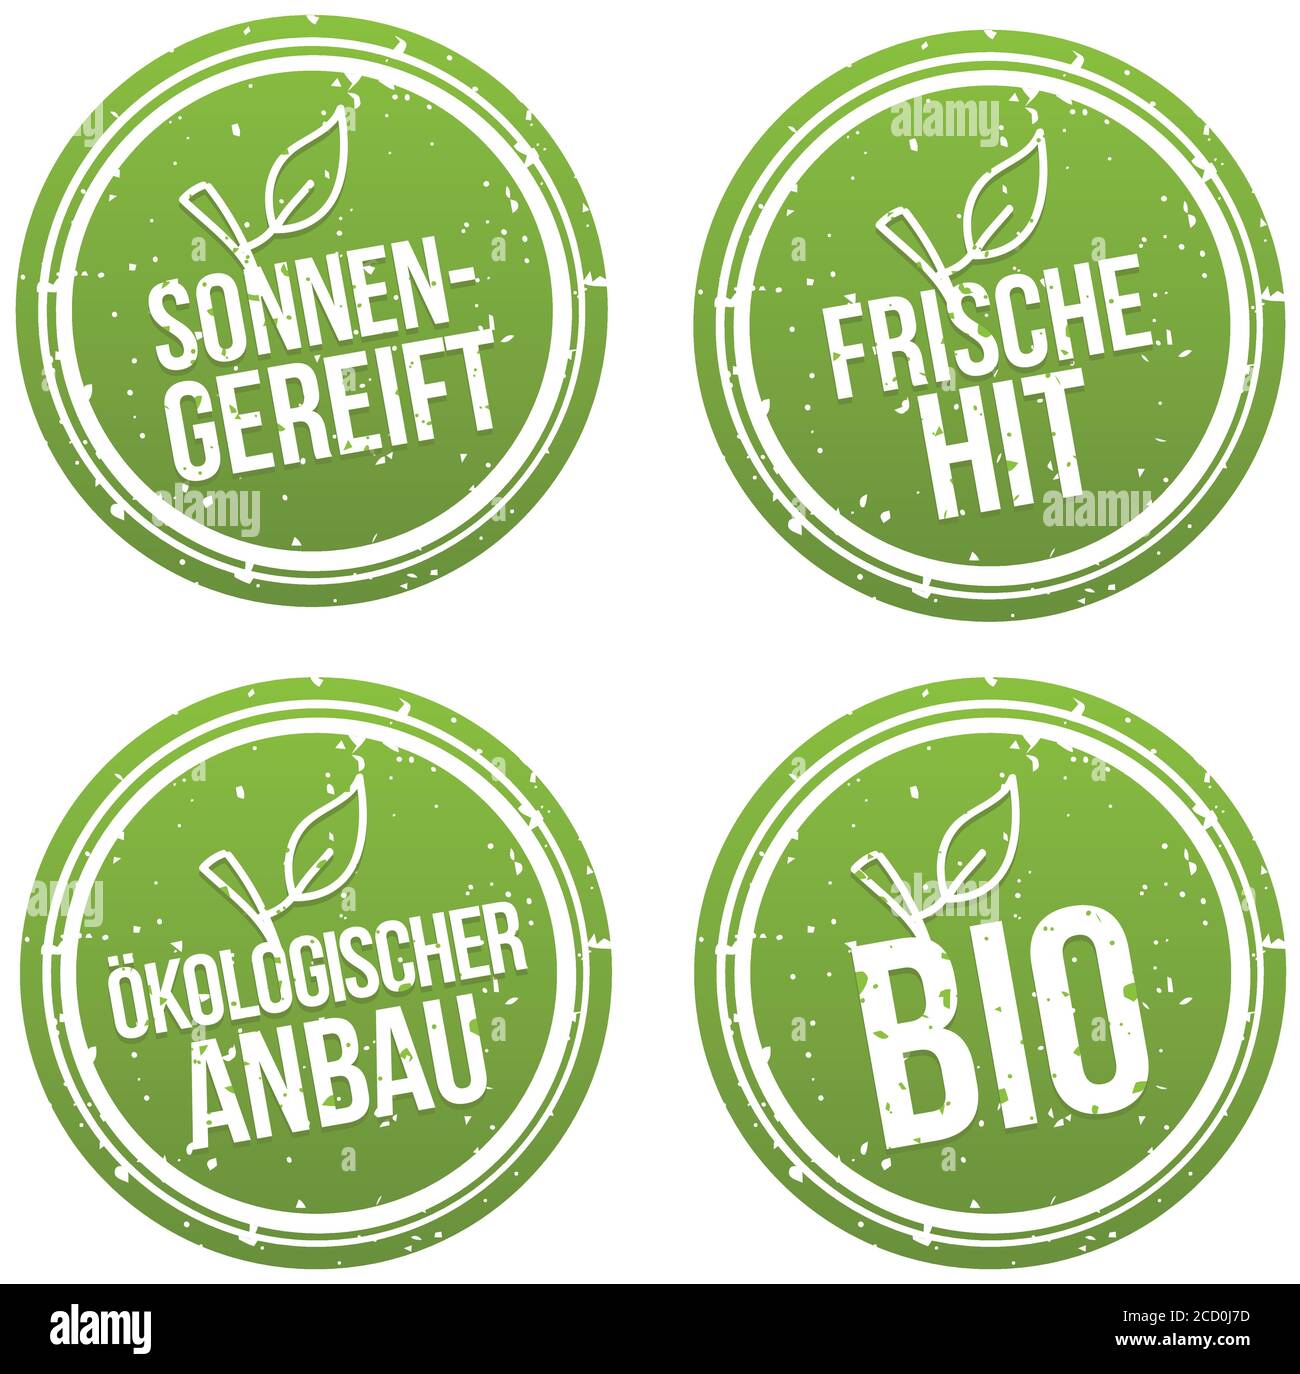 Sonnengereift, Frische Hit, Ökologischer Anbau und Bio Banner Set. Stock Vector